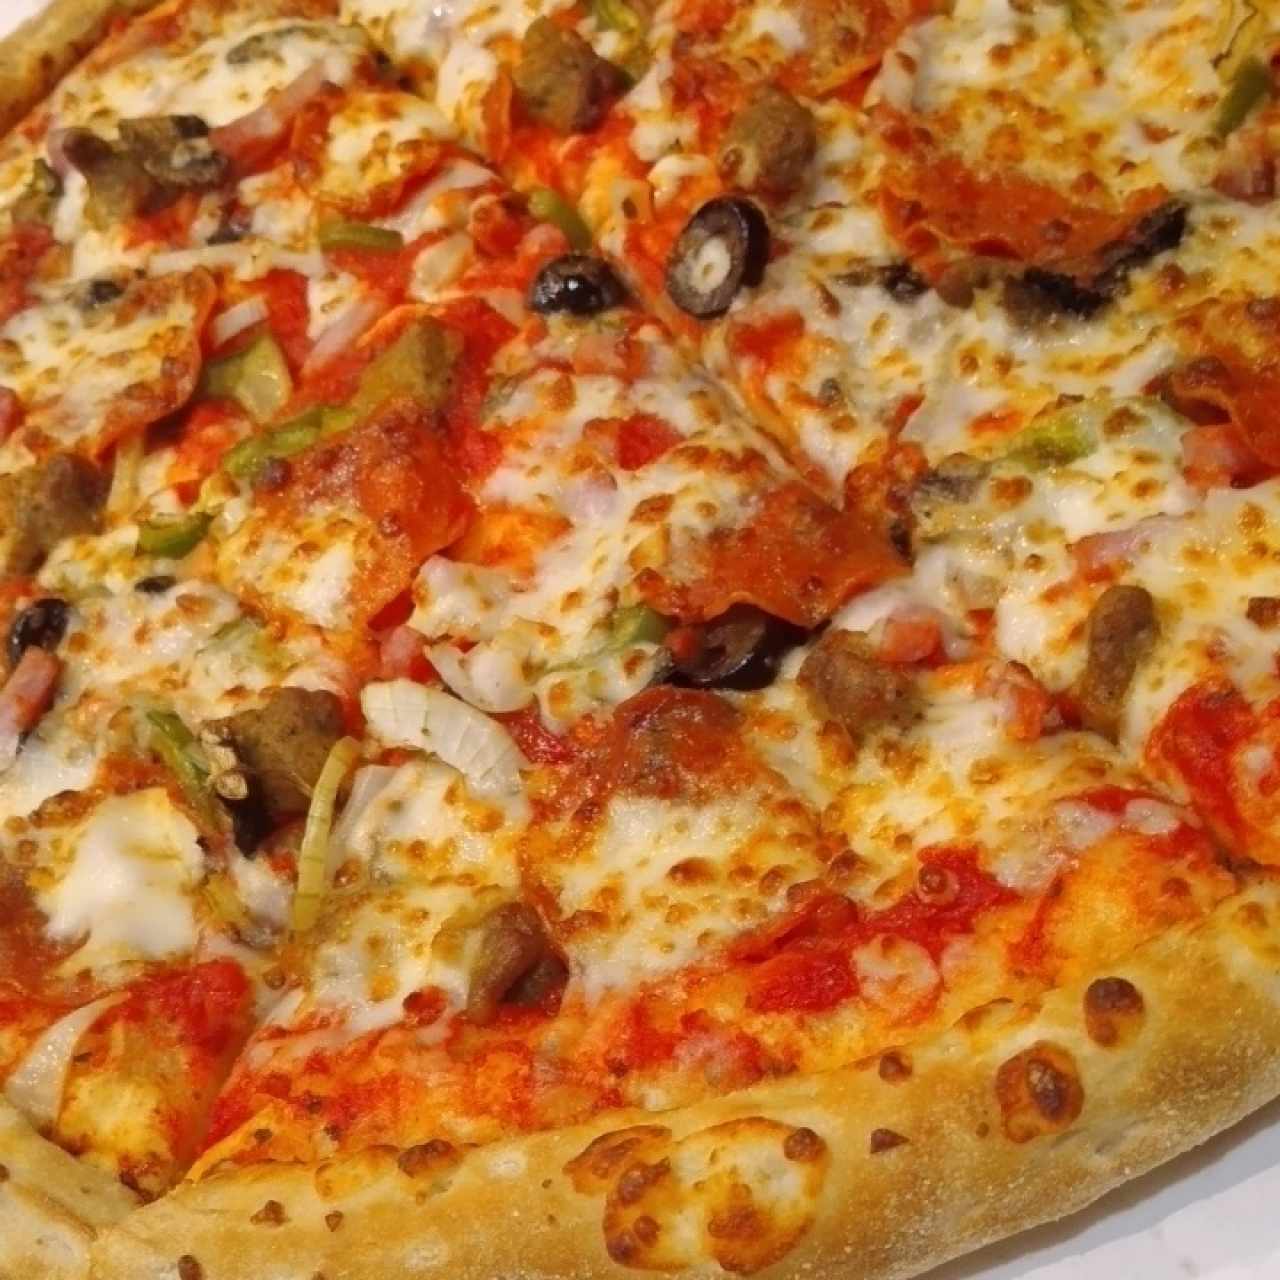 The Works que delicia de pizza con ese toque picante 🤩🤩 buen sabor la recomiendo 👍👍👍 buena atencion y ambiente